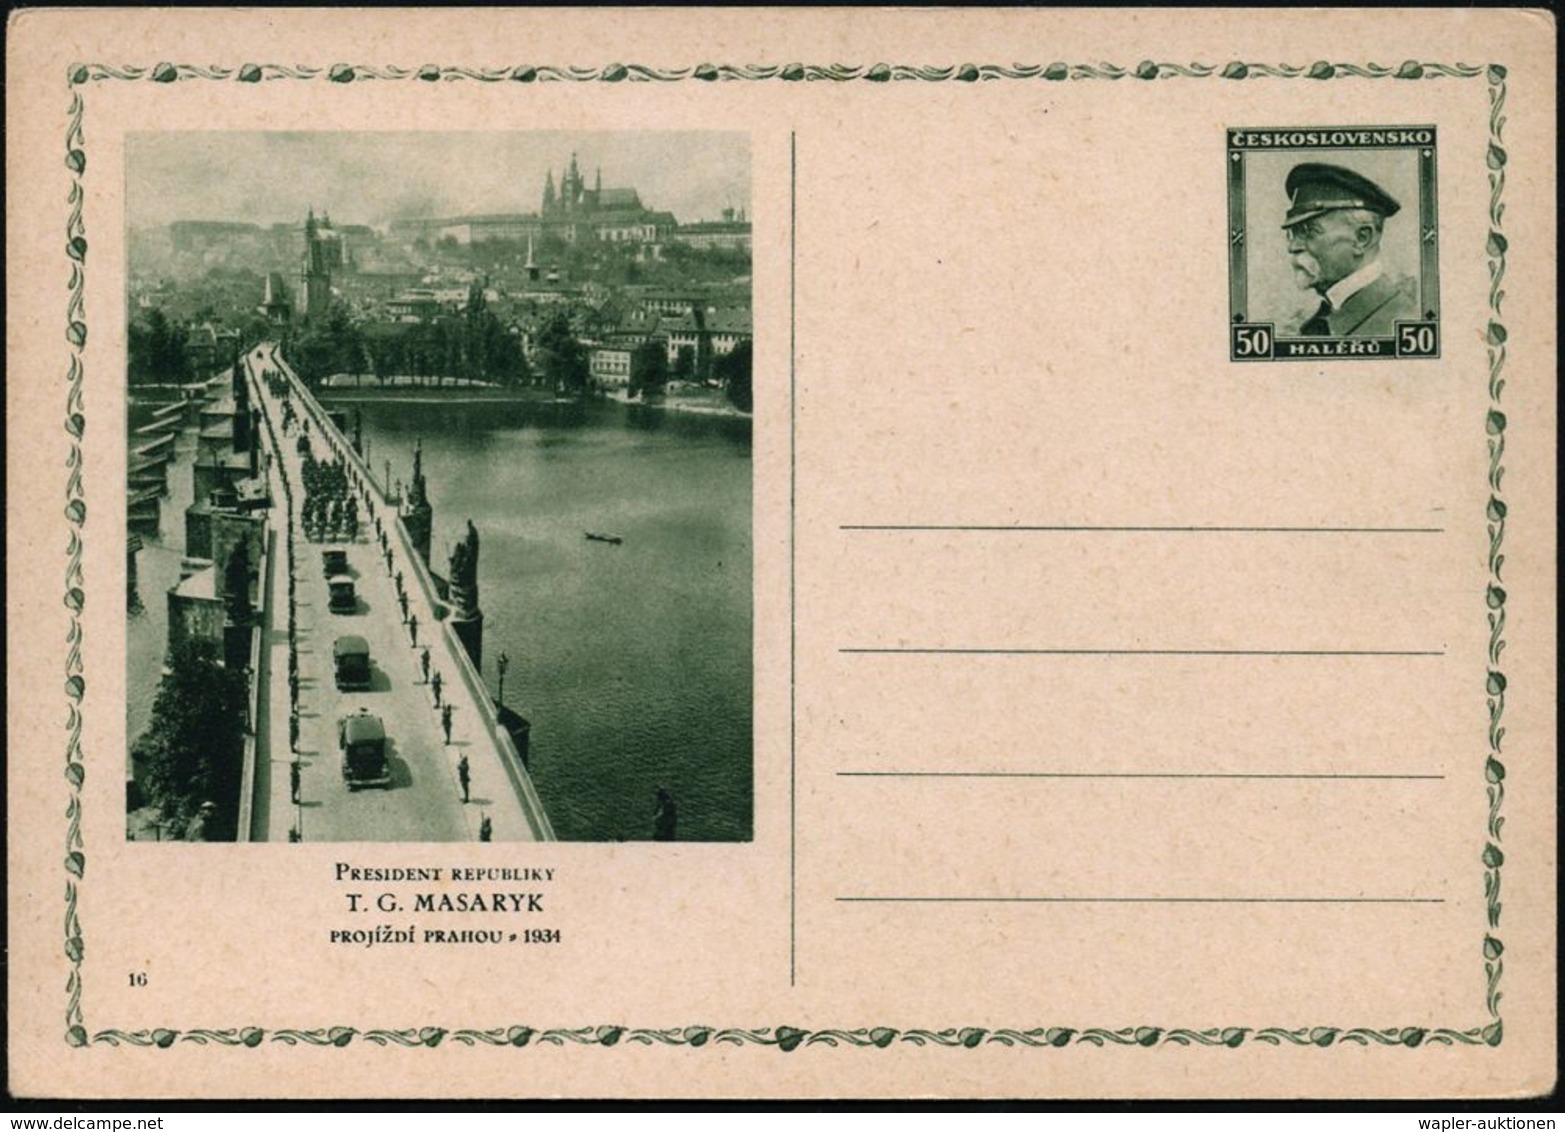 TSCHECHOSLOWAKEI 1936 50 H. BiP Masaryk-Jubiläum, Grün: Prag - Karlsbrücke Mit Brücken-Heiligen (Burg U. Veitsdom) Ungeb - Brücken